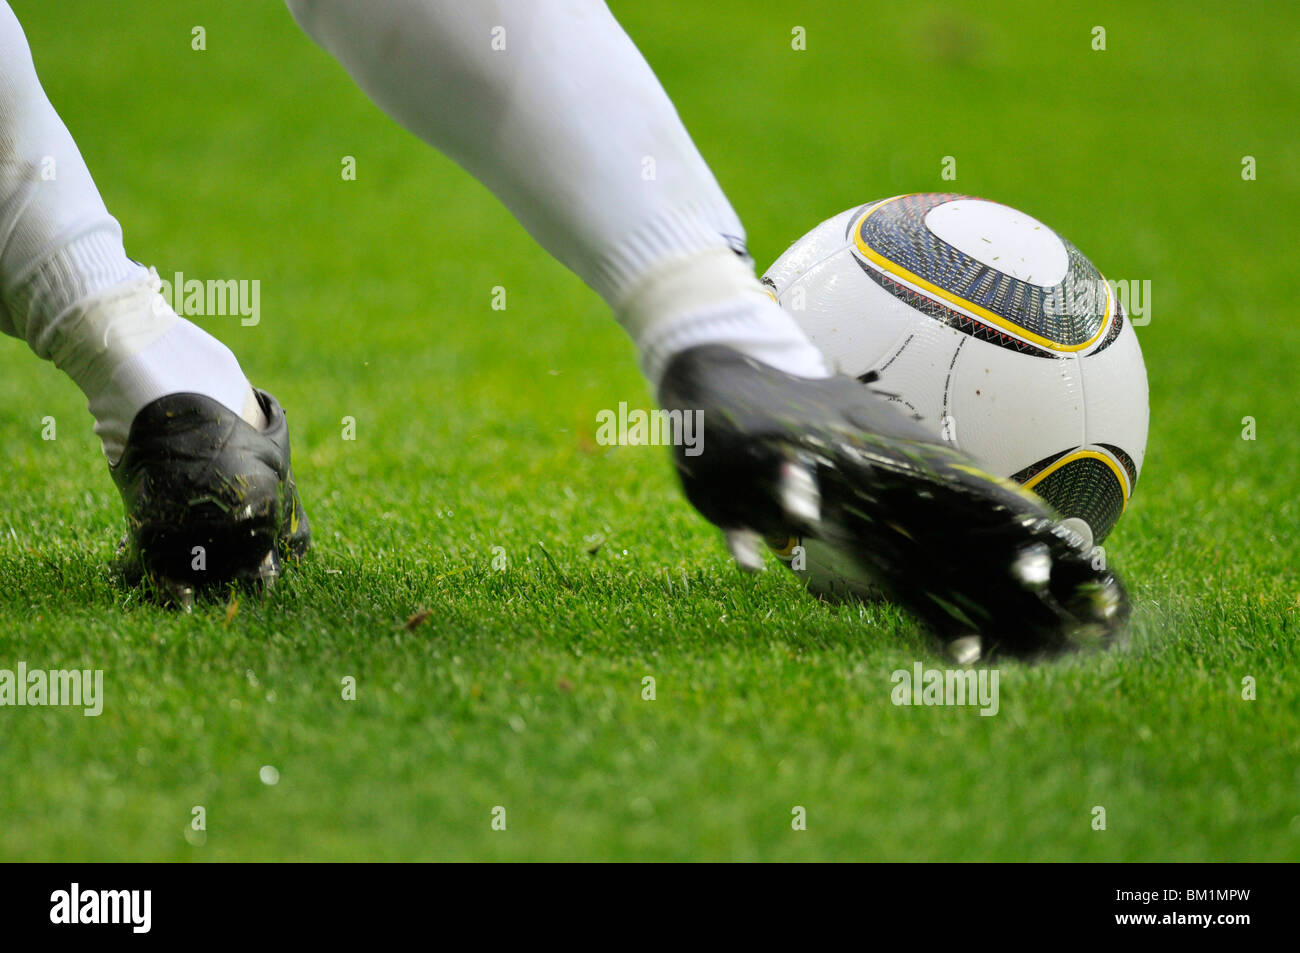 Fußballer kickt Jabulani der offizielle Spielball der FIFA Fußball-Weltmeisterschaft 2010 in Südafrika Stockfoto